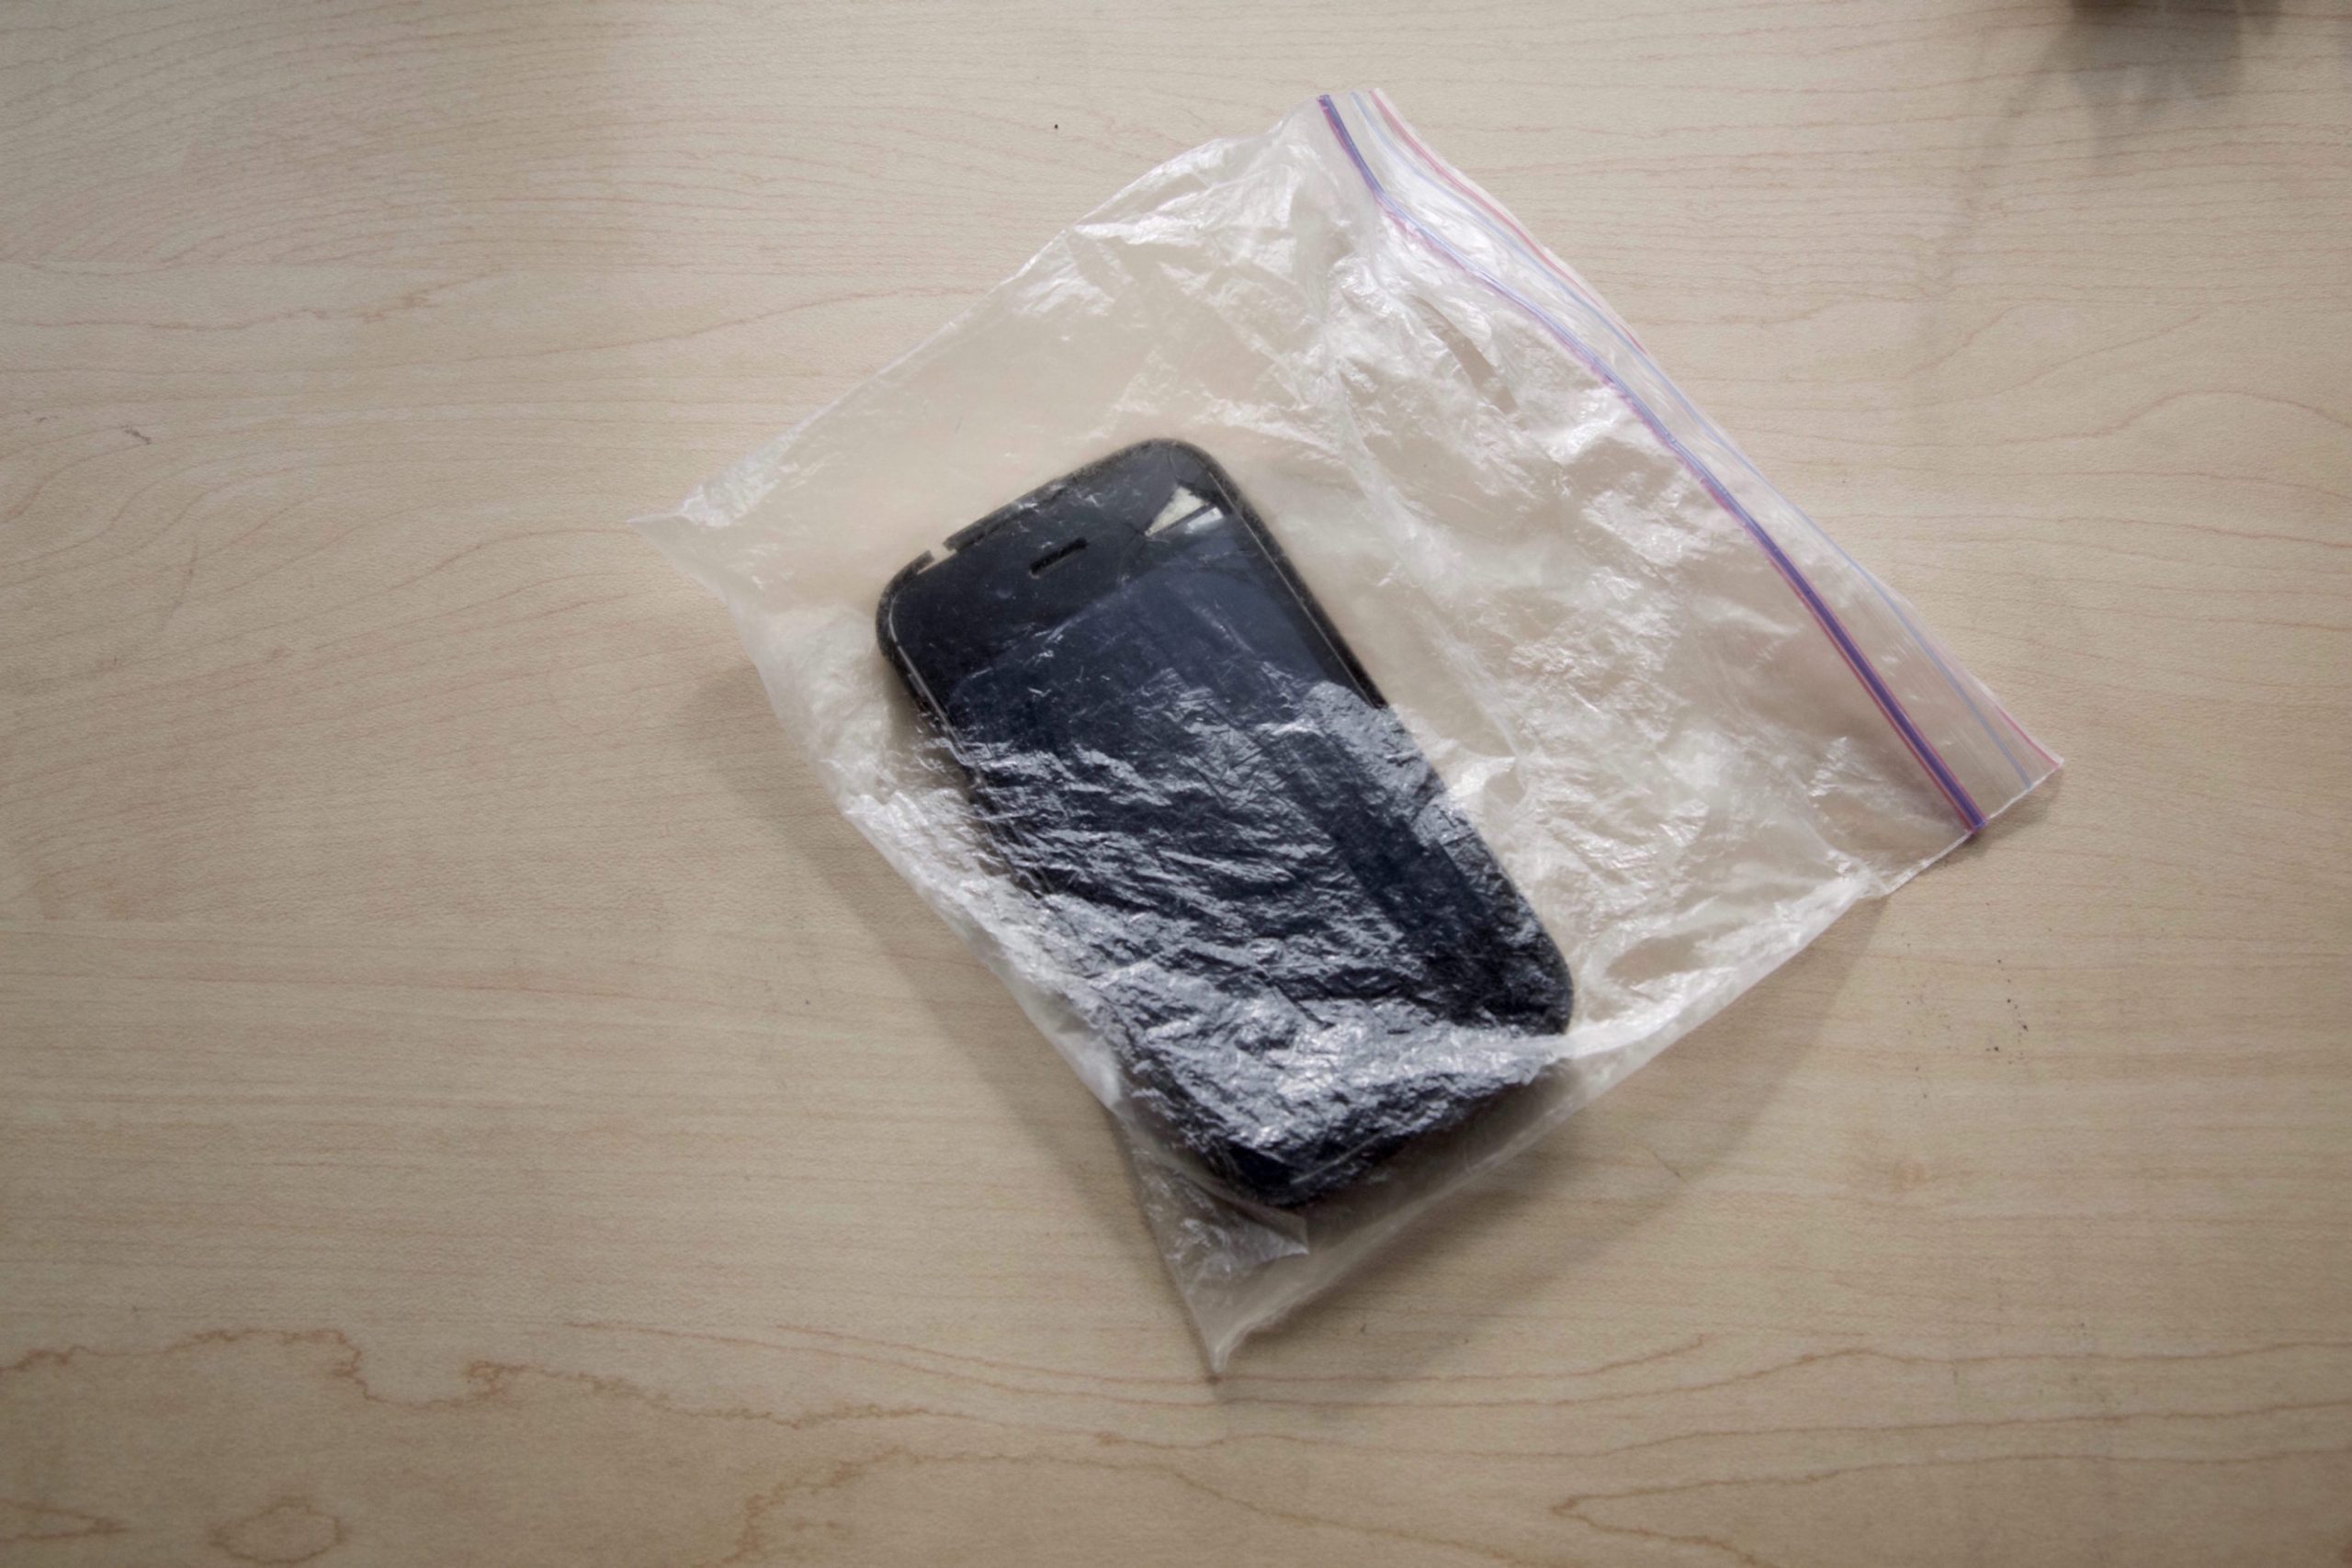 A smartphone in a zipper bag.